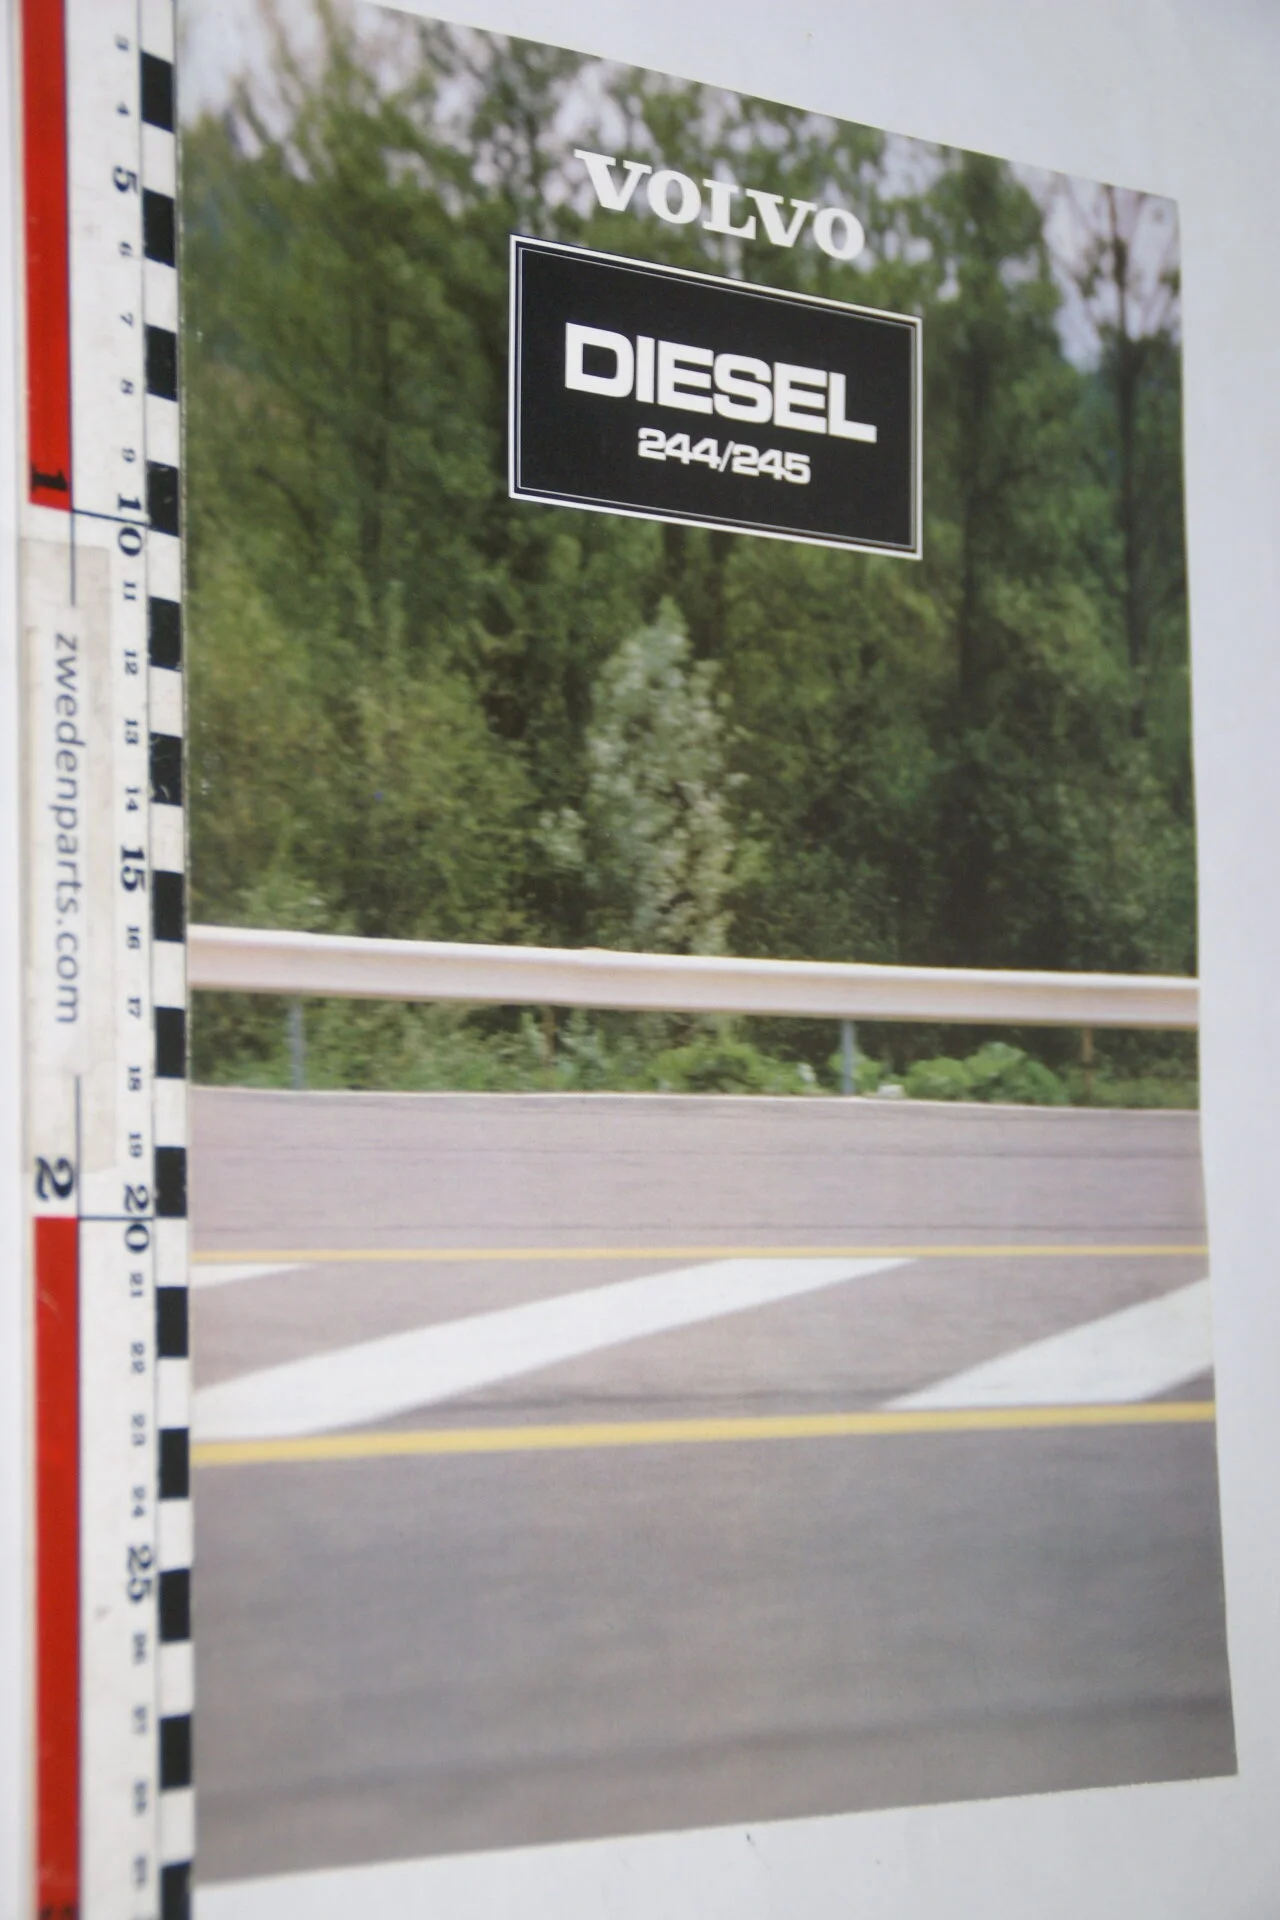 DSC08278 1981 Brochure Volvo 244 245 diesel-d6ddadfc